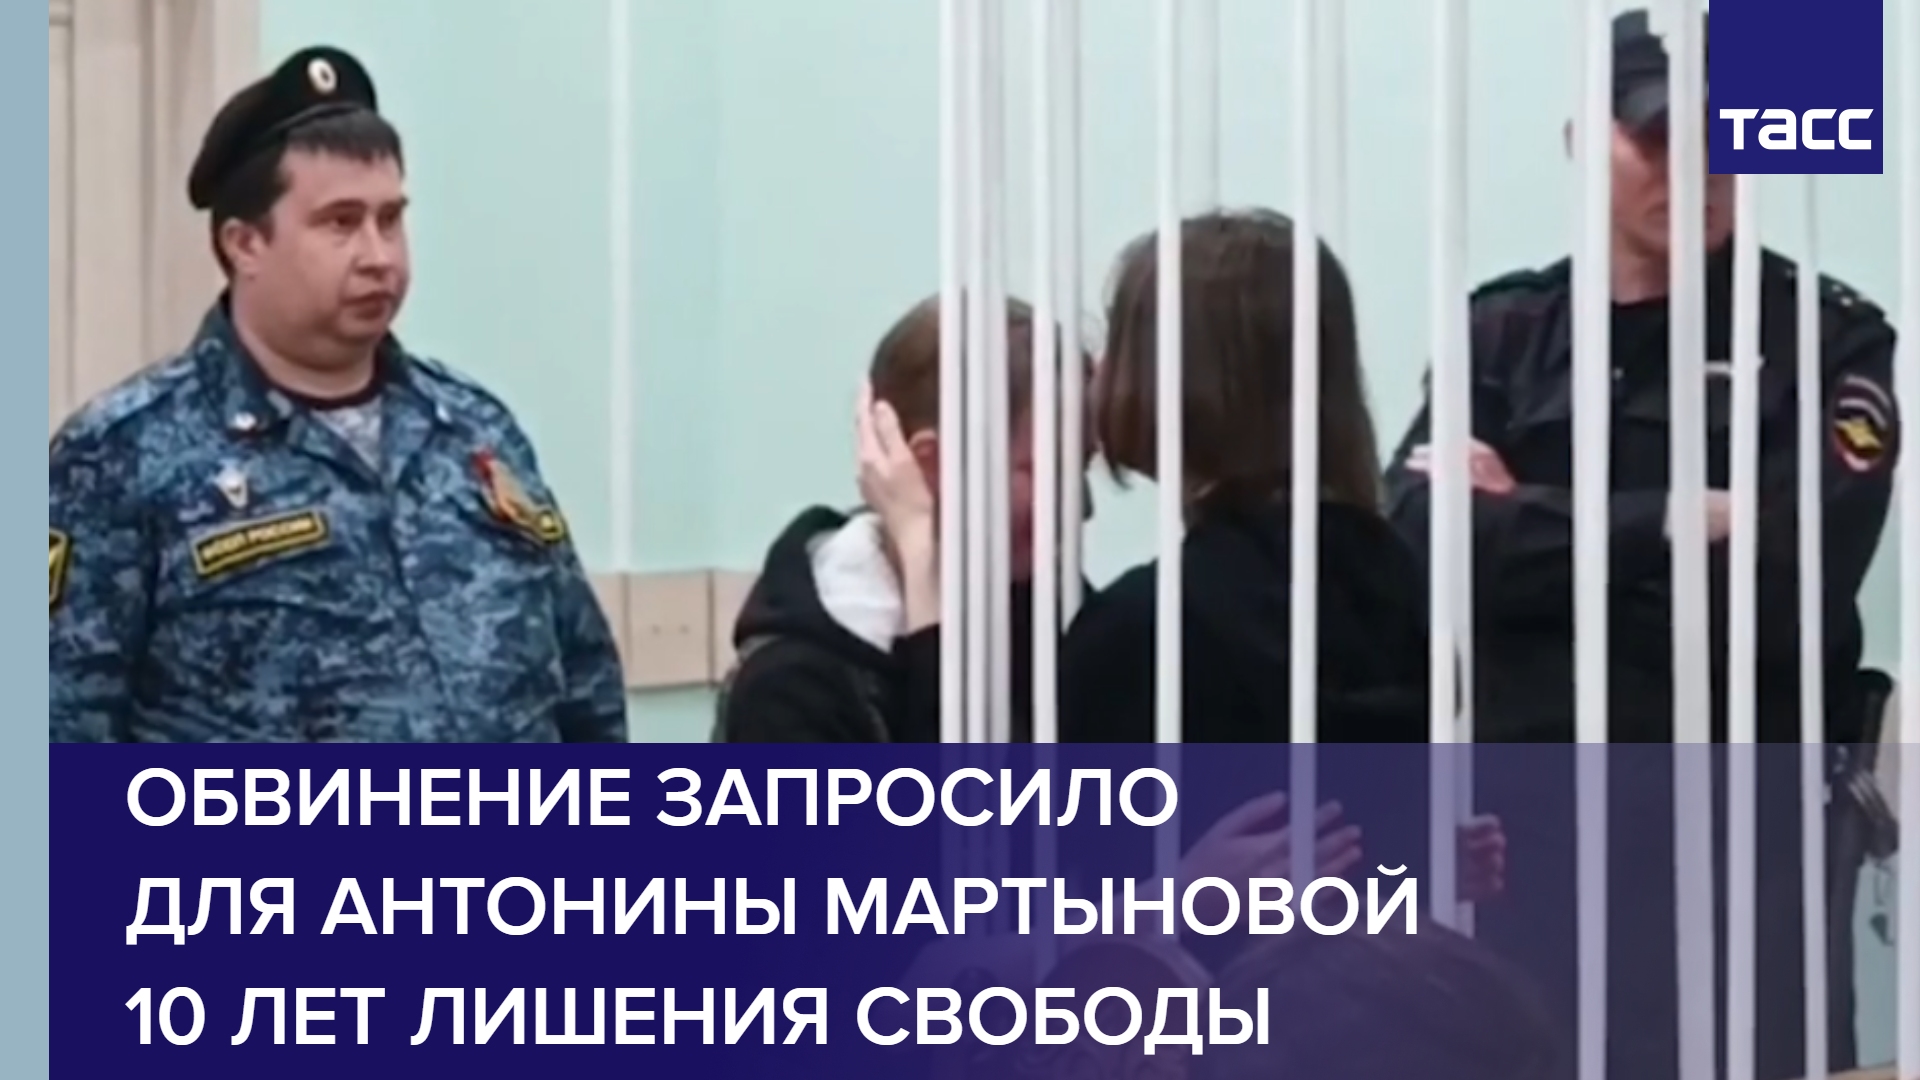 Обвинение запросило для Антонины Мартыновой 10 лет лишения свободы